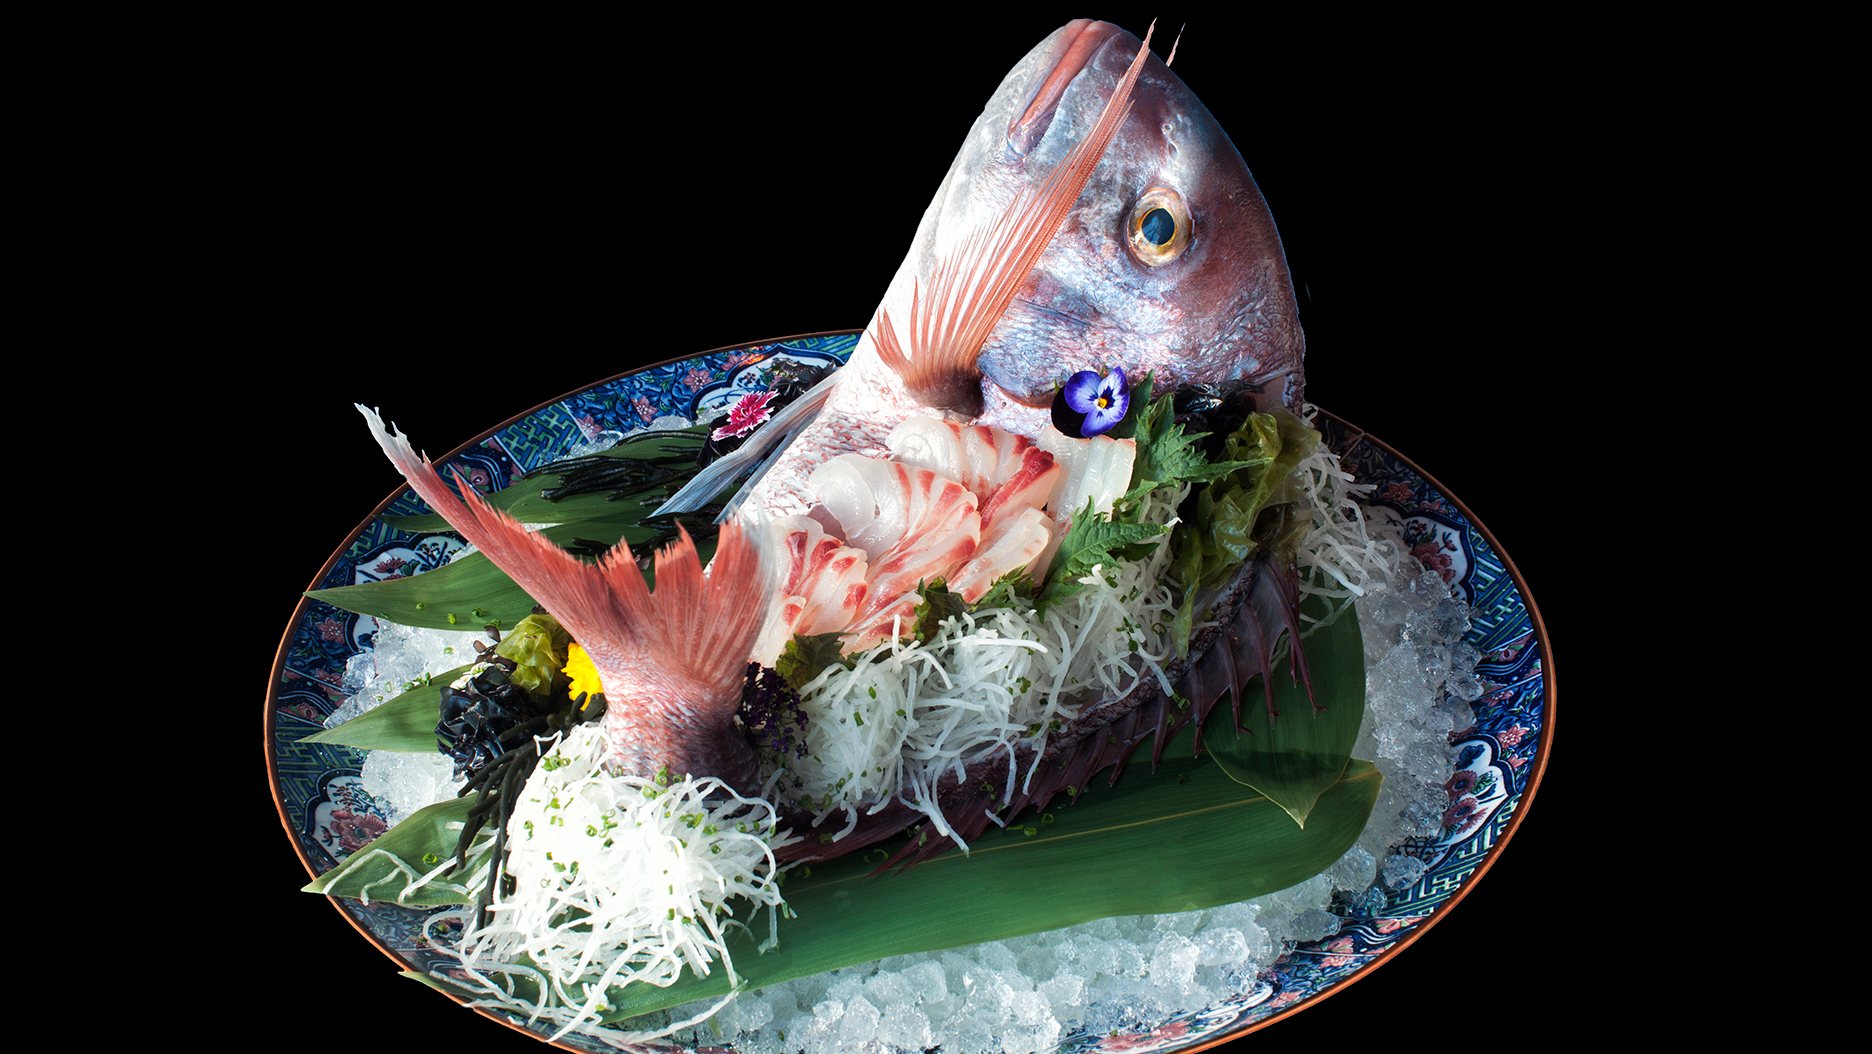 Servido na carcaça do peixe branco, este sashimi com corte extra fino é um dos destaques do menu de degustação dedicado às gyozas das quintas-feiras ©DR